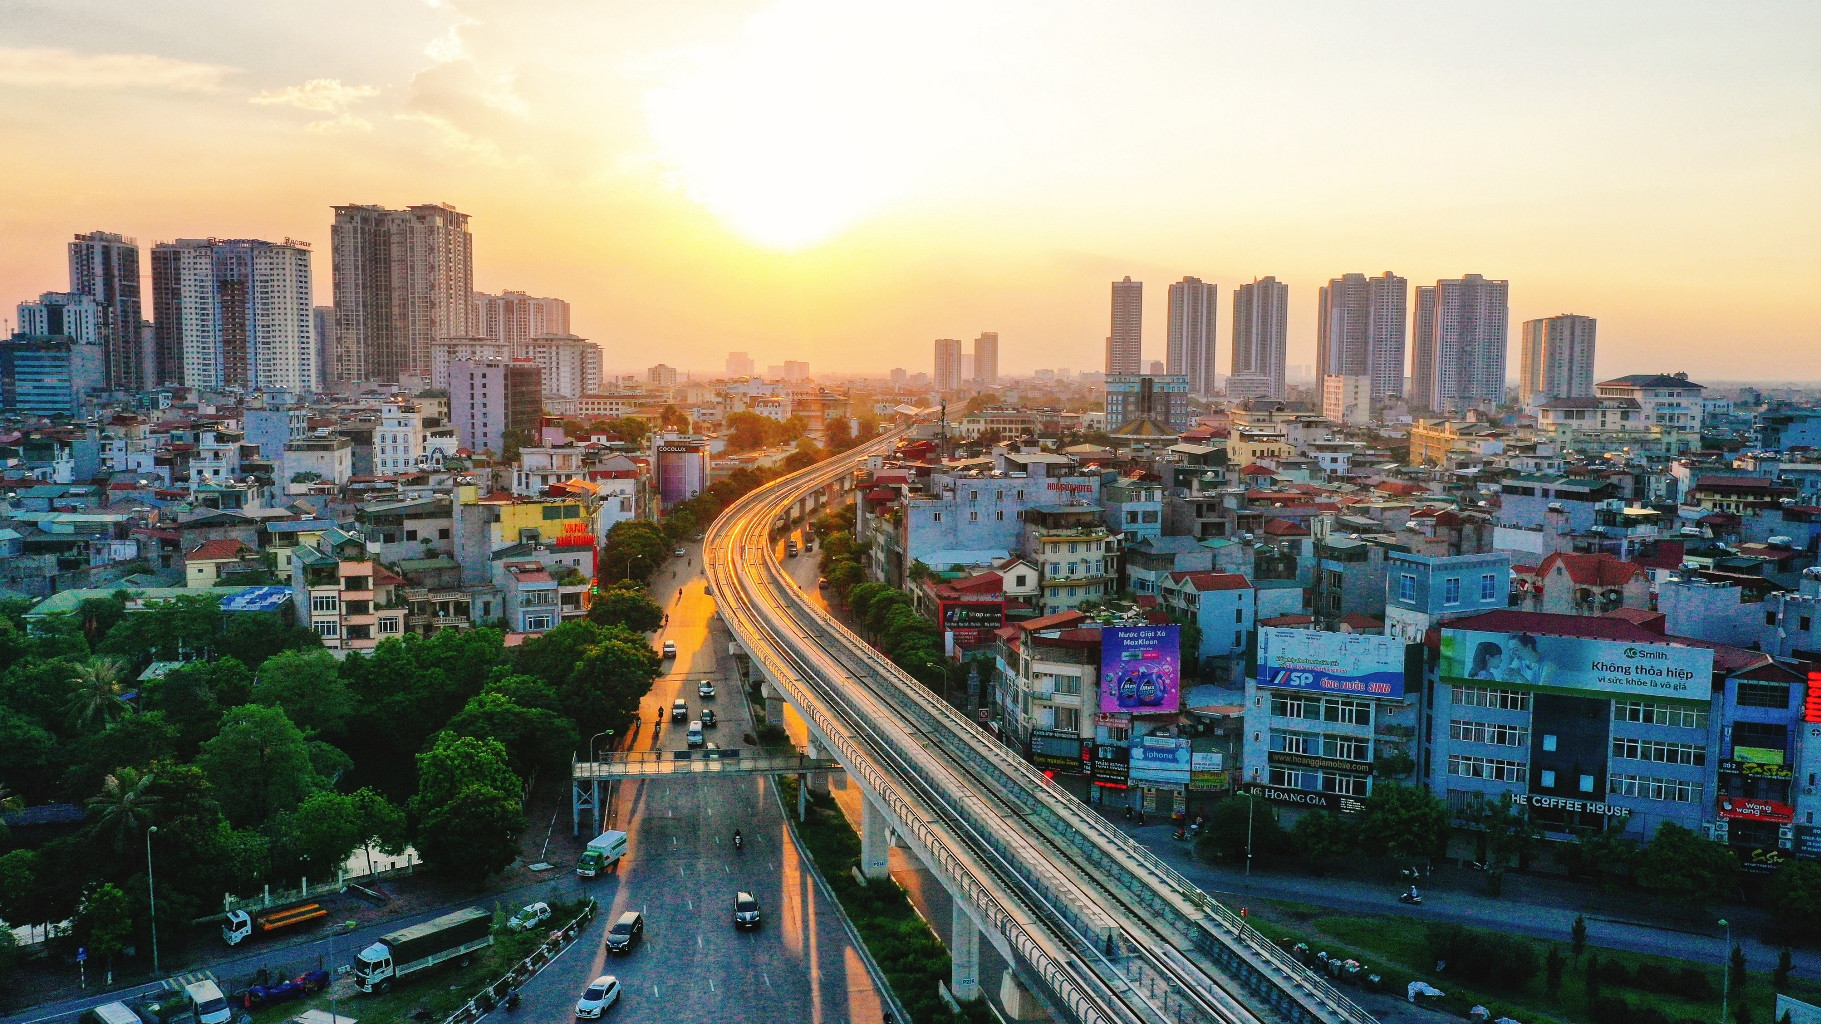 Thị trường bất động sản Việt Nam luôn nằm trong top ưu tiên đầu tư hàng đầu của Hàn Quốc - Viet Nam Smart City